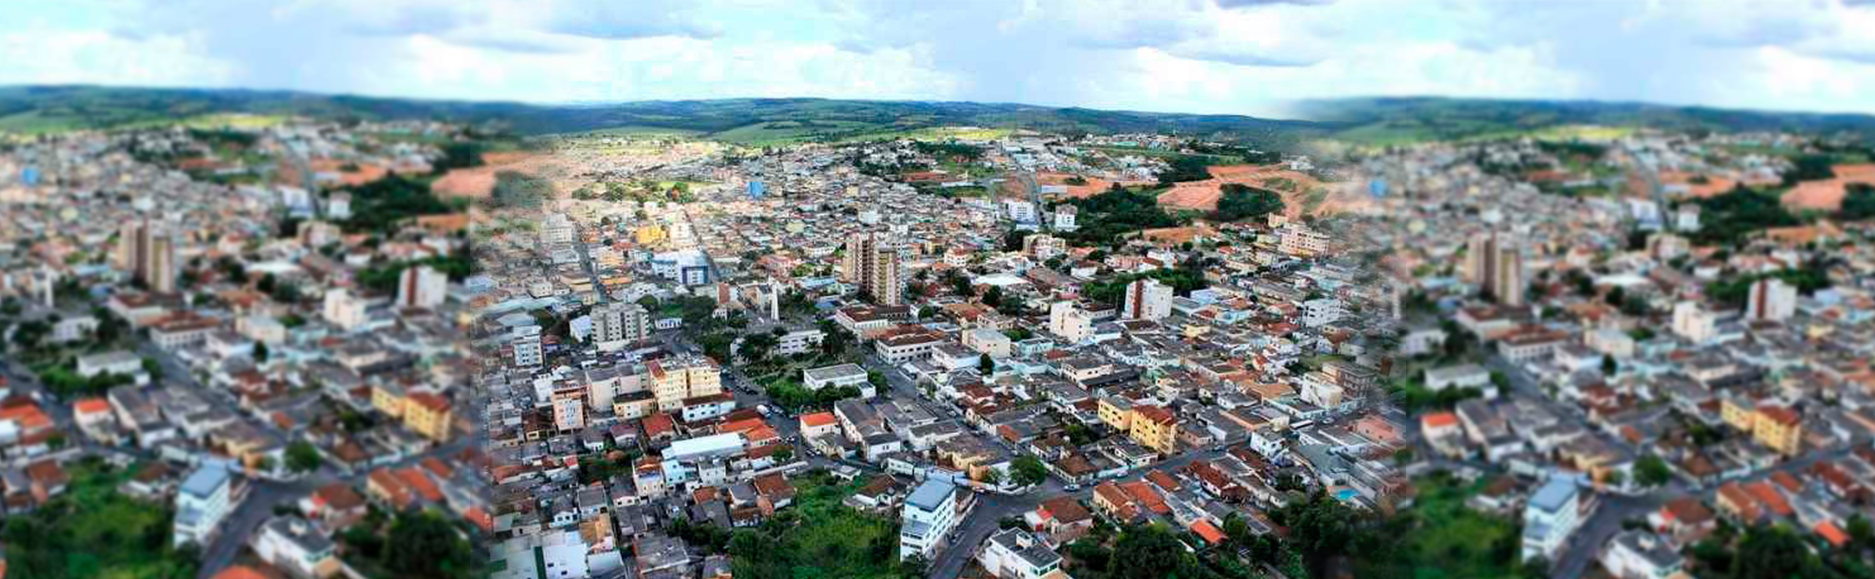 Prefeitura de Santo Antônio do Monte (MG) inicia modernização digital da gestão pública